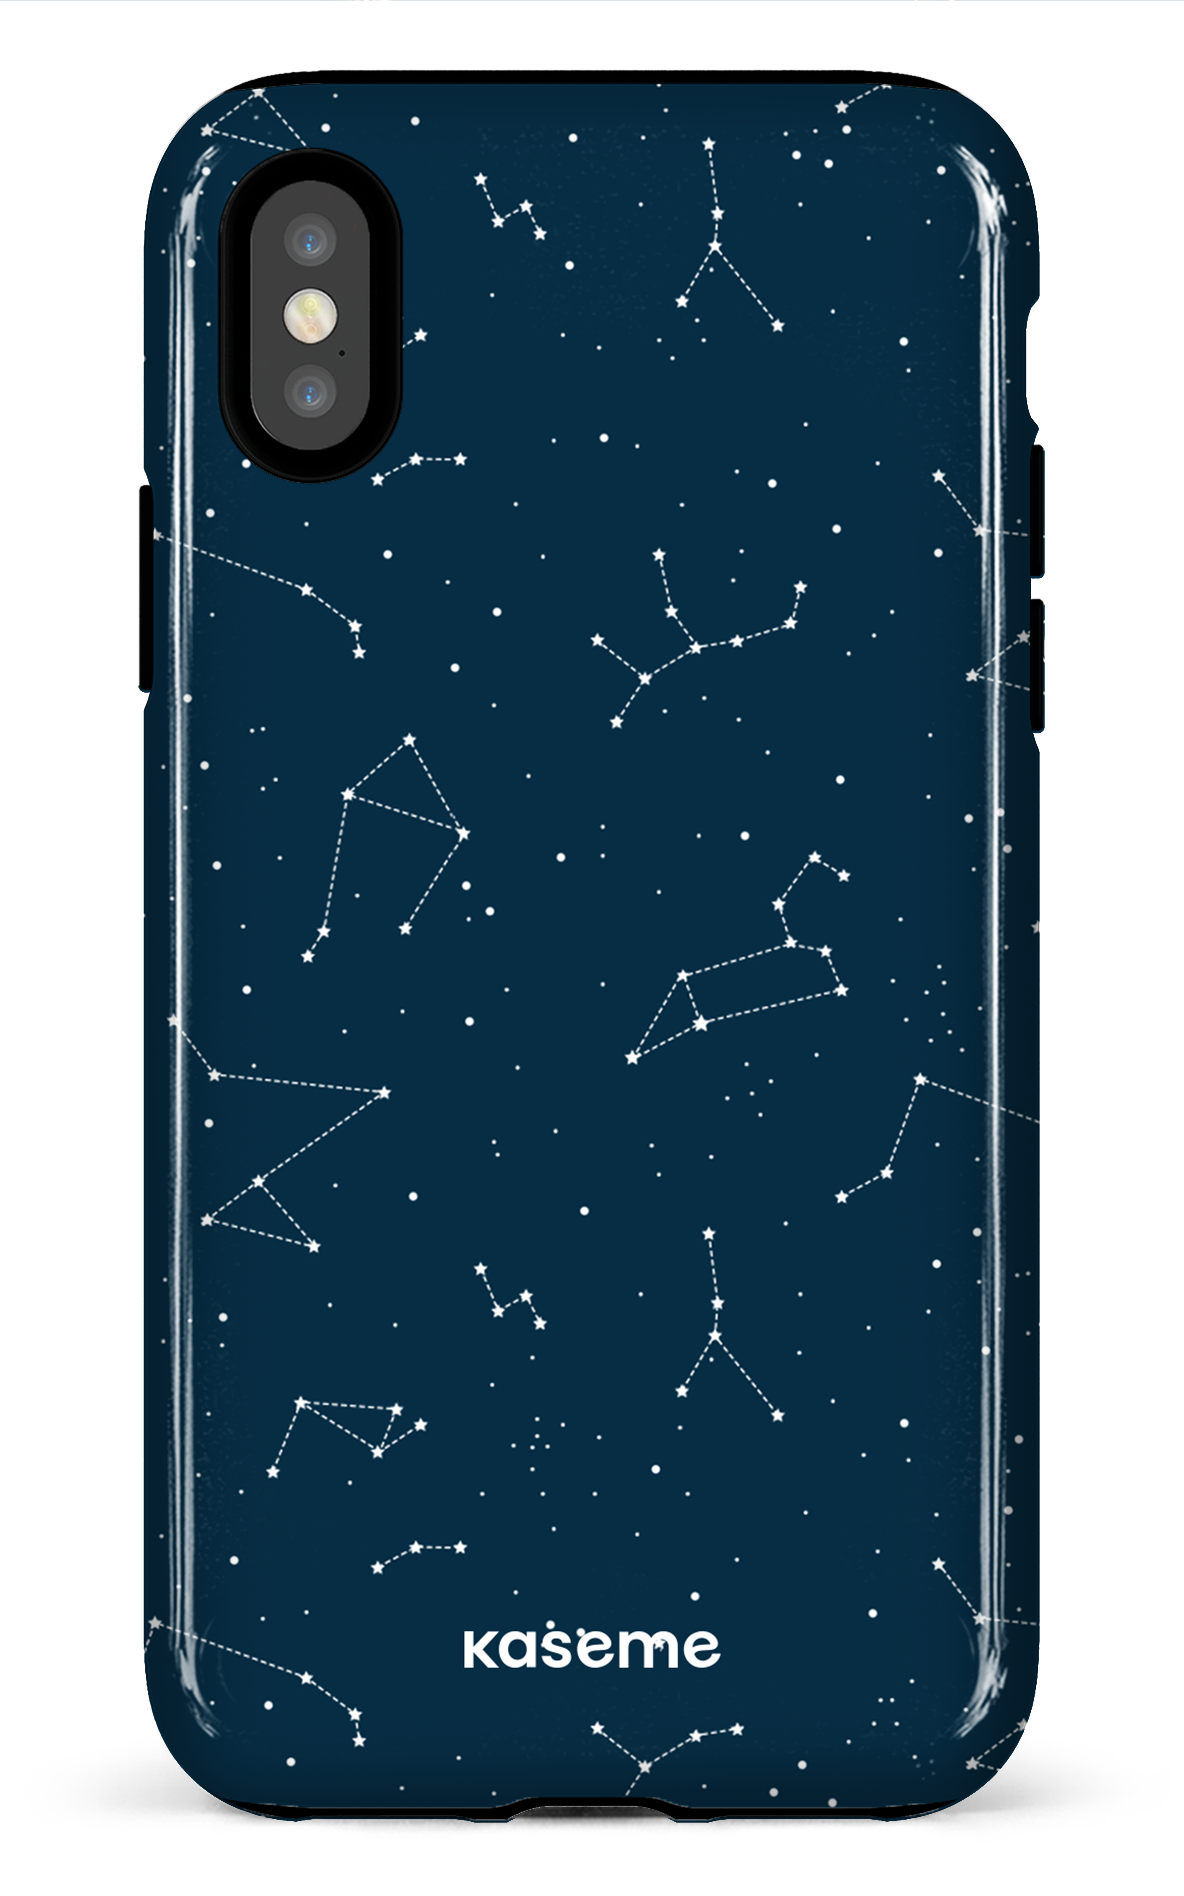 Cosmos - iPhone X/XS